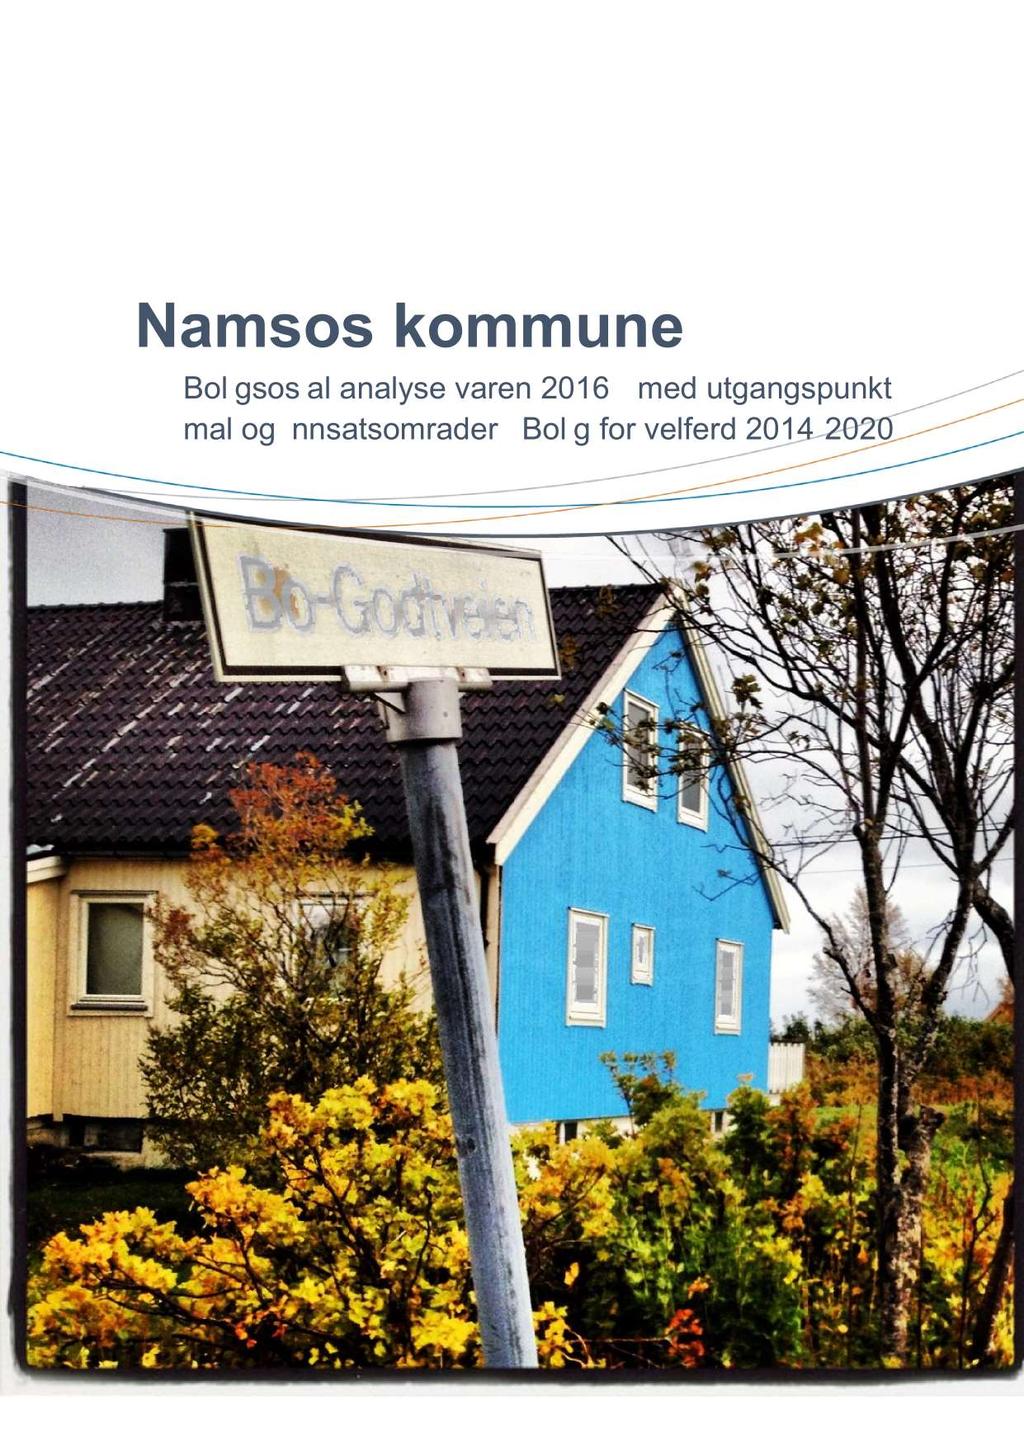 Namsos kommune Boligsosial analyse våren 2016 - med